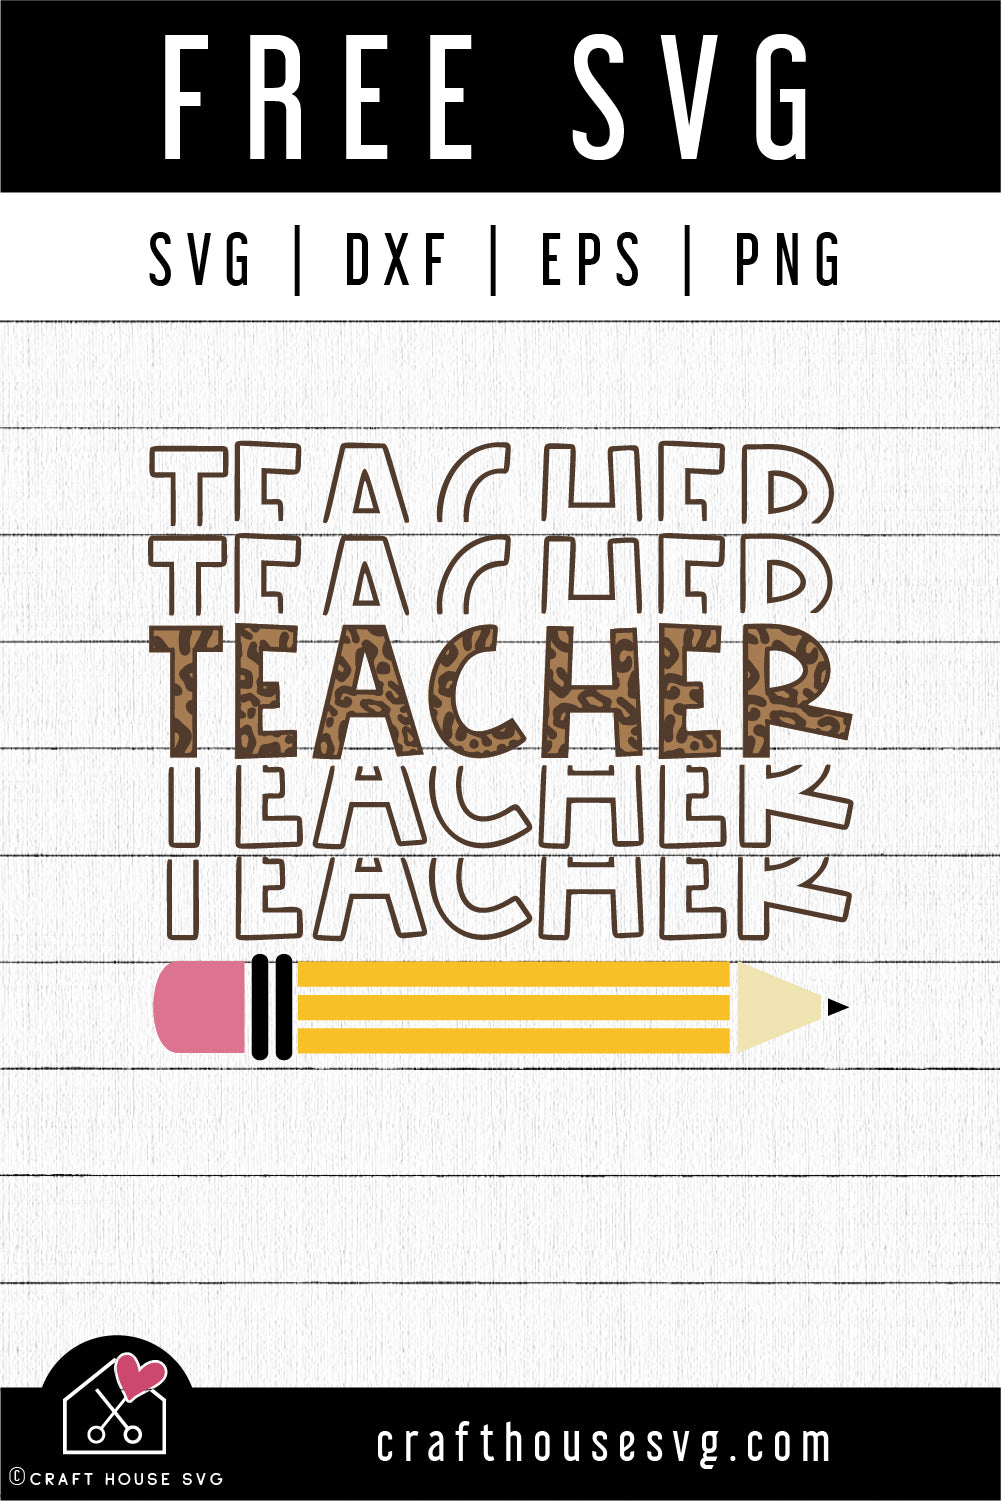 FREE Teacher echo leopard SVG | Teacher SVG | FB188